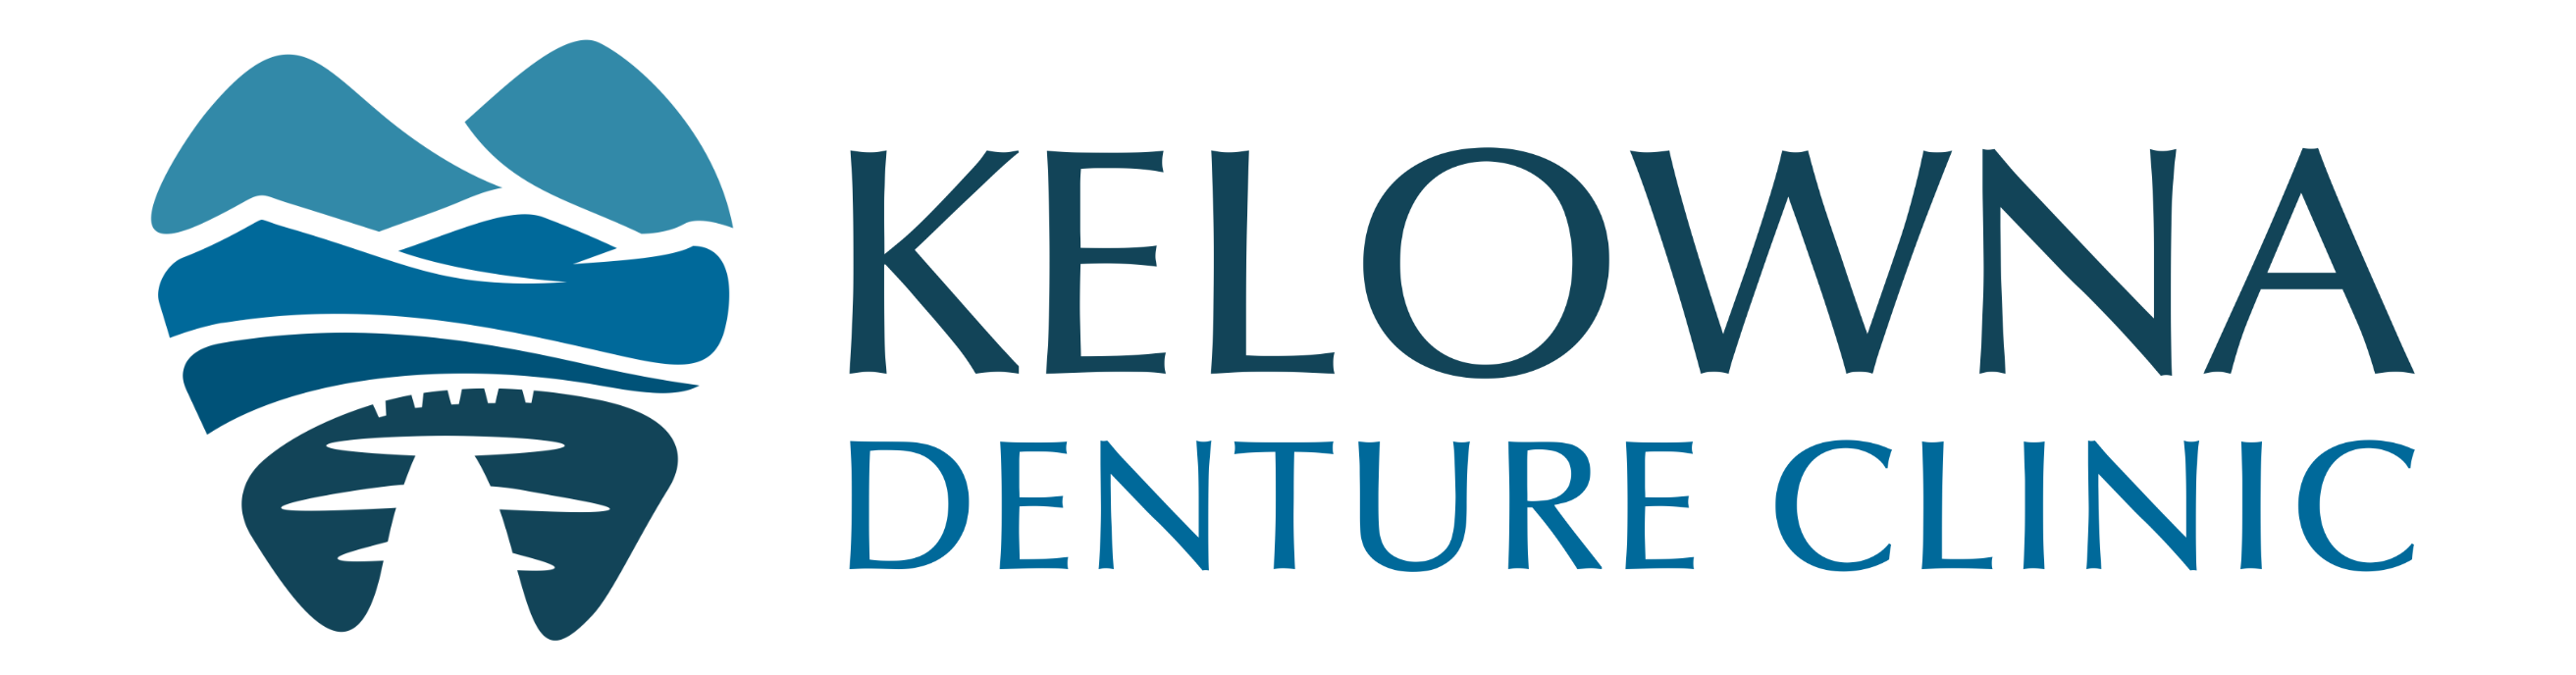 Kelowna Denture Clinic